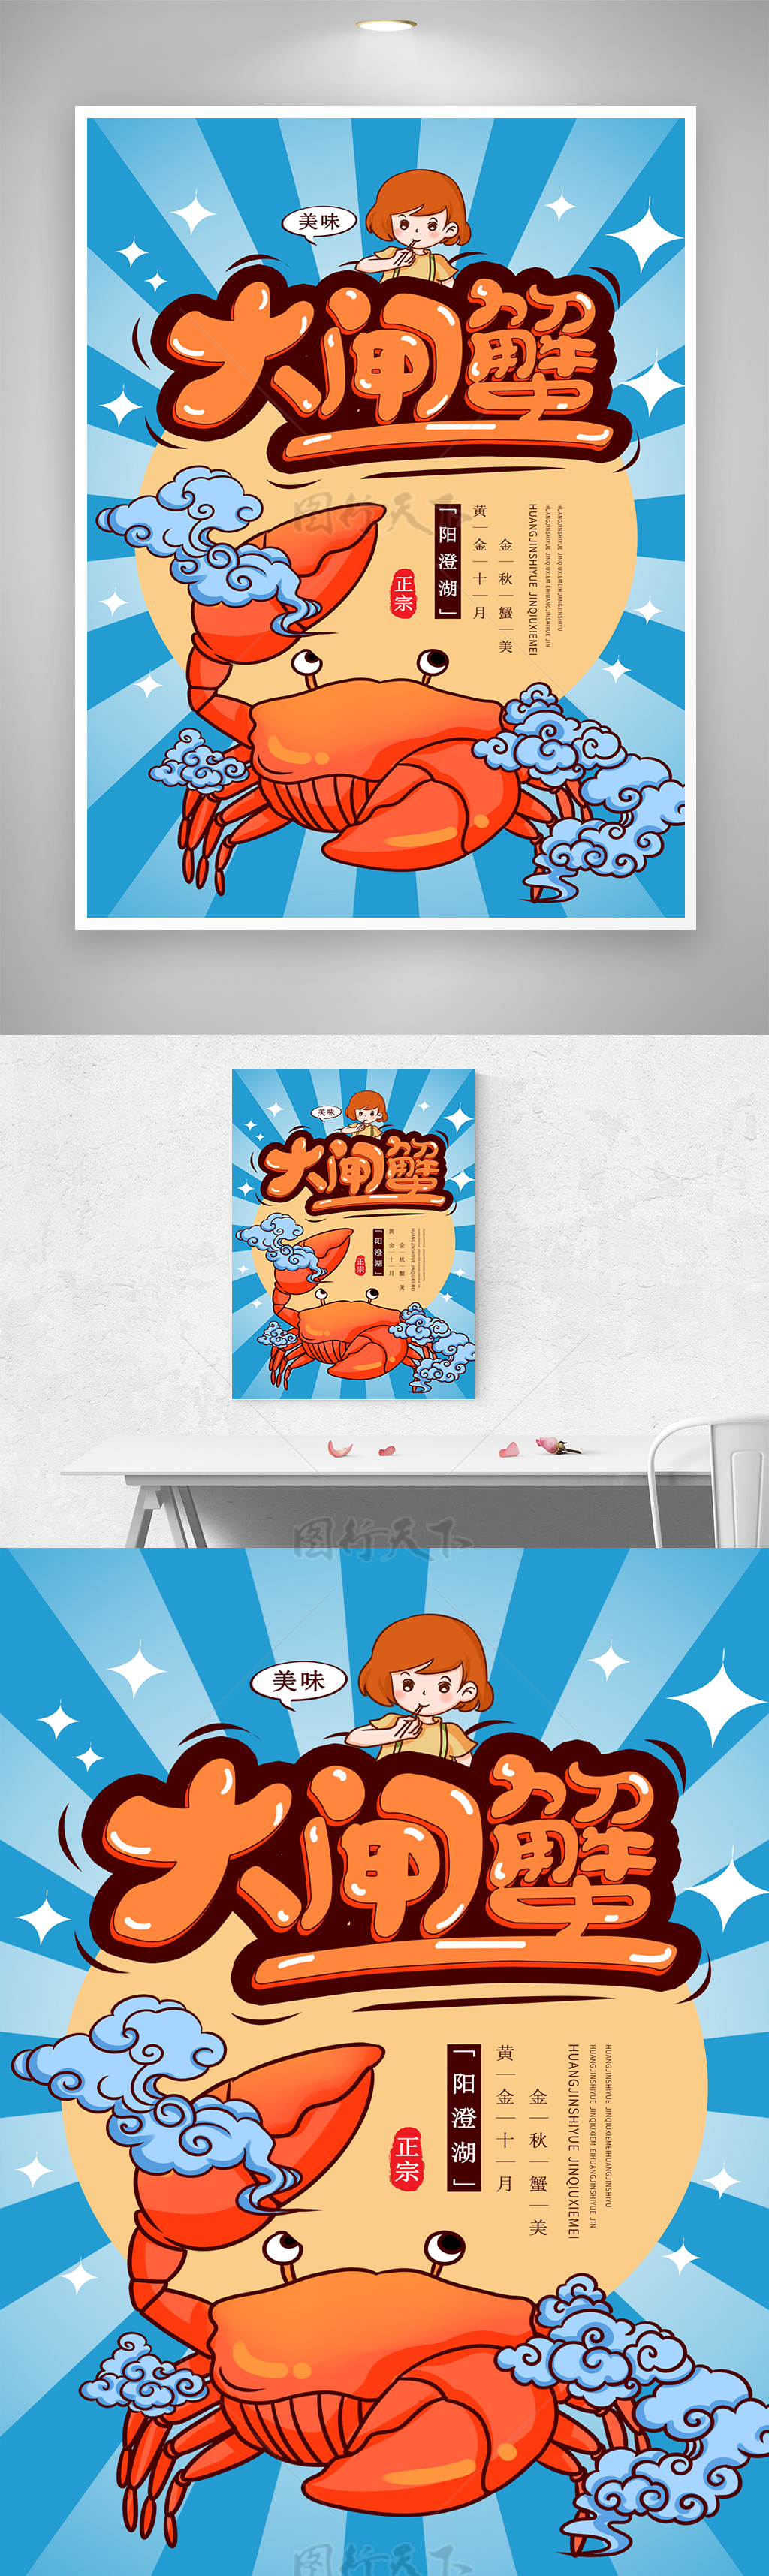 创意螃蟹蓝色卡通美食活动海报素材